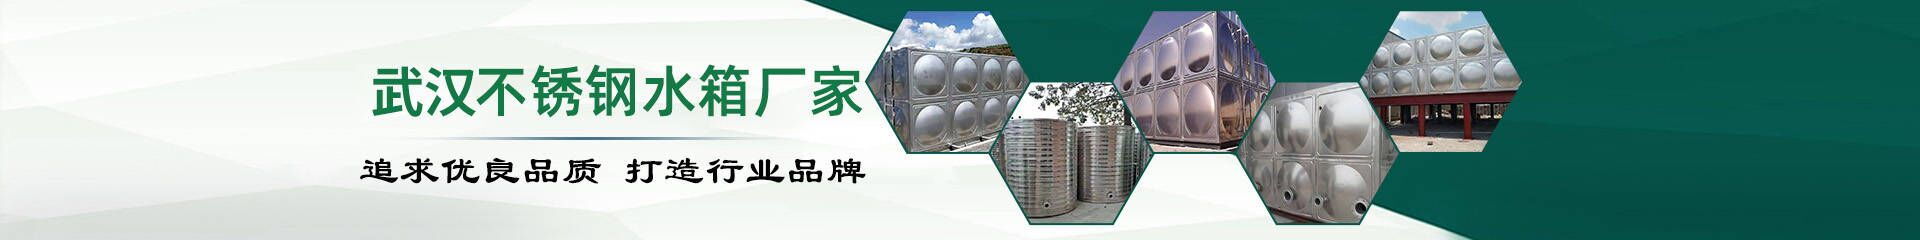 武汉不锈钢水箱厂家分享安装水箱注意事项有哪些？_行业新闻_3775a线路检测中心